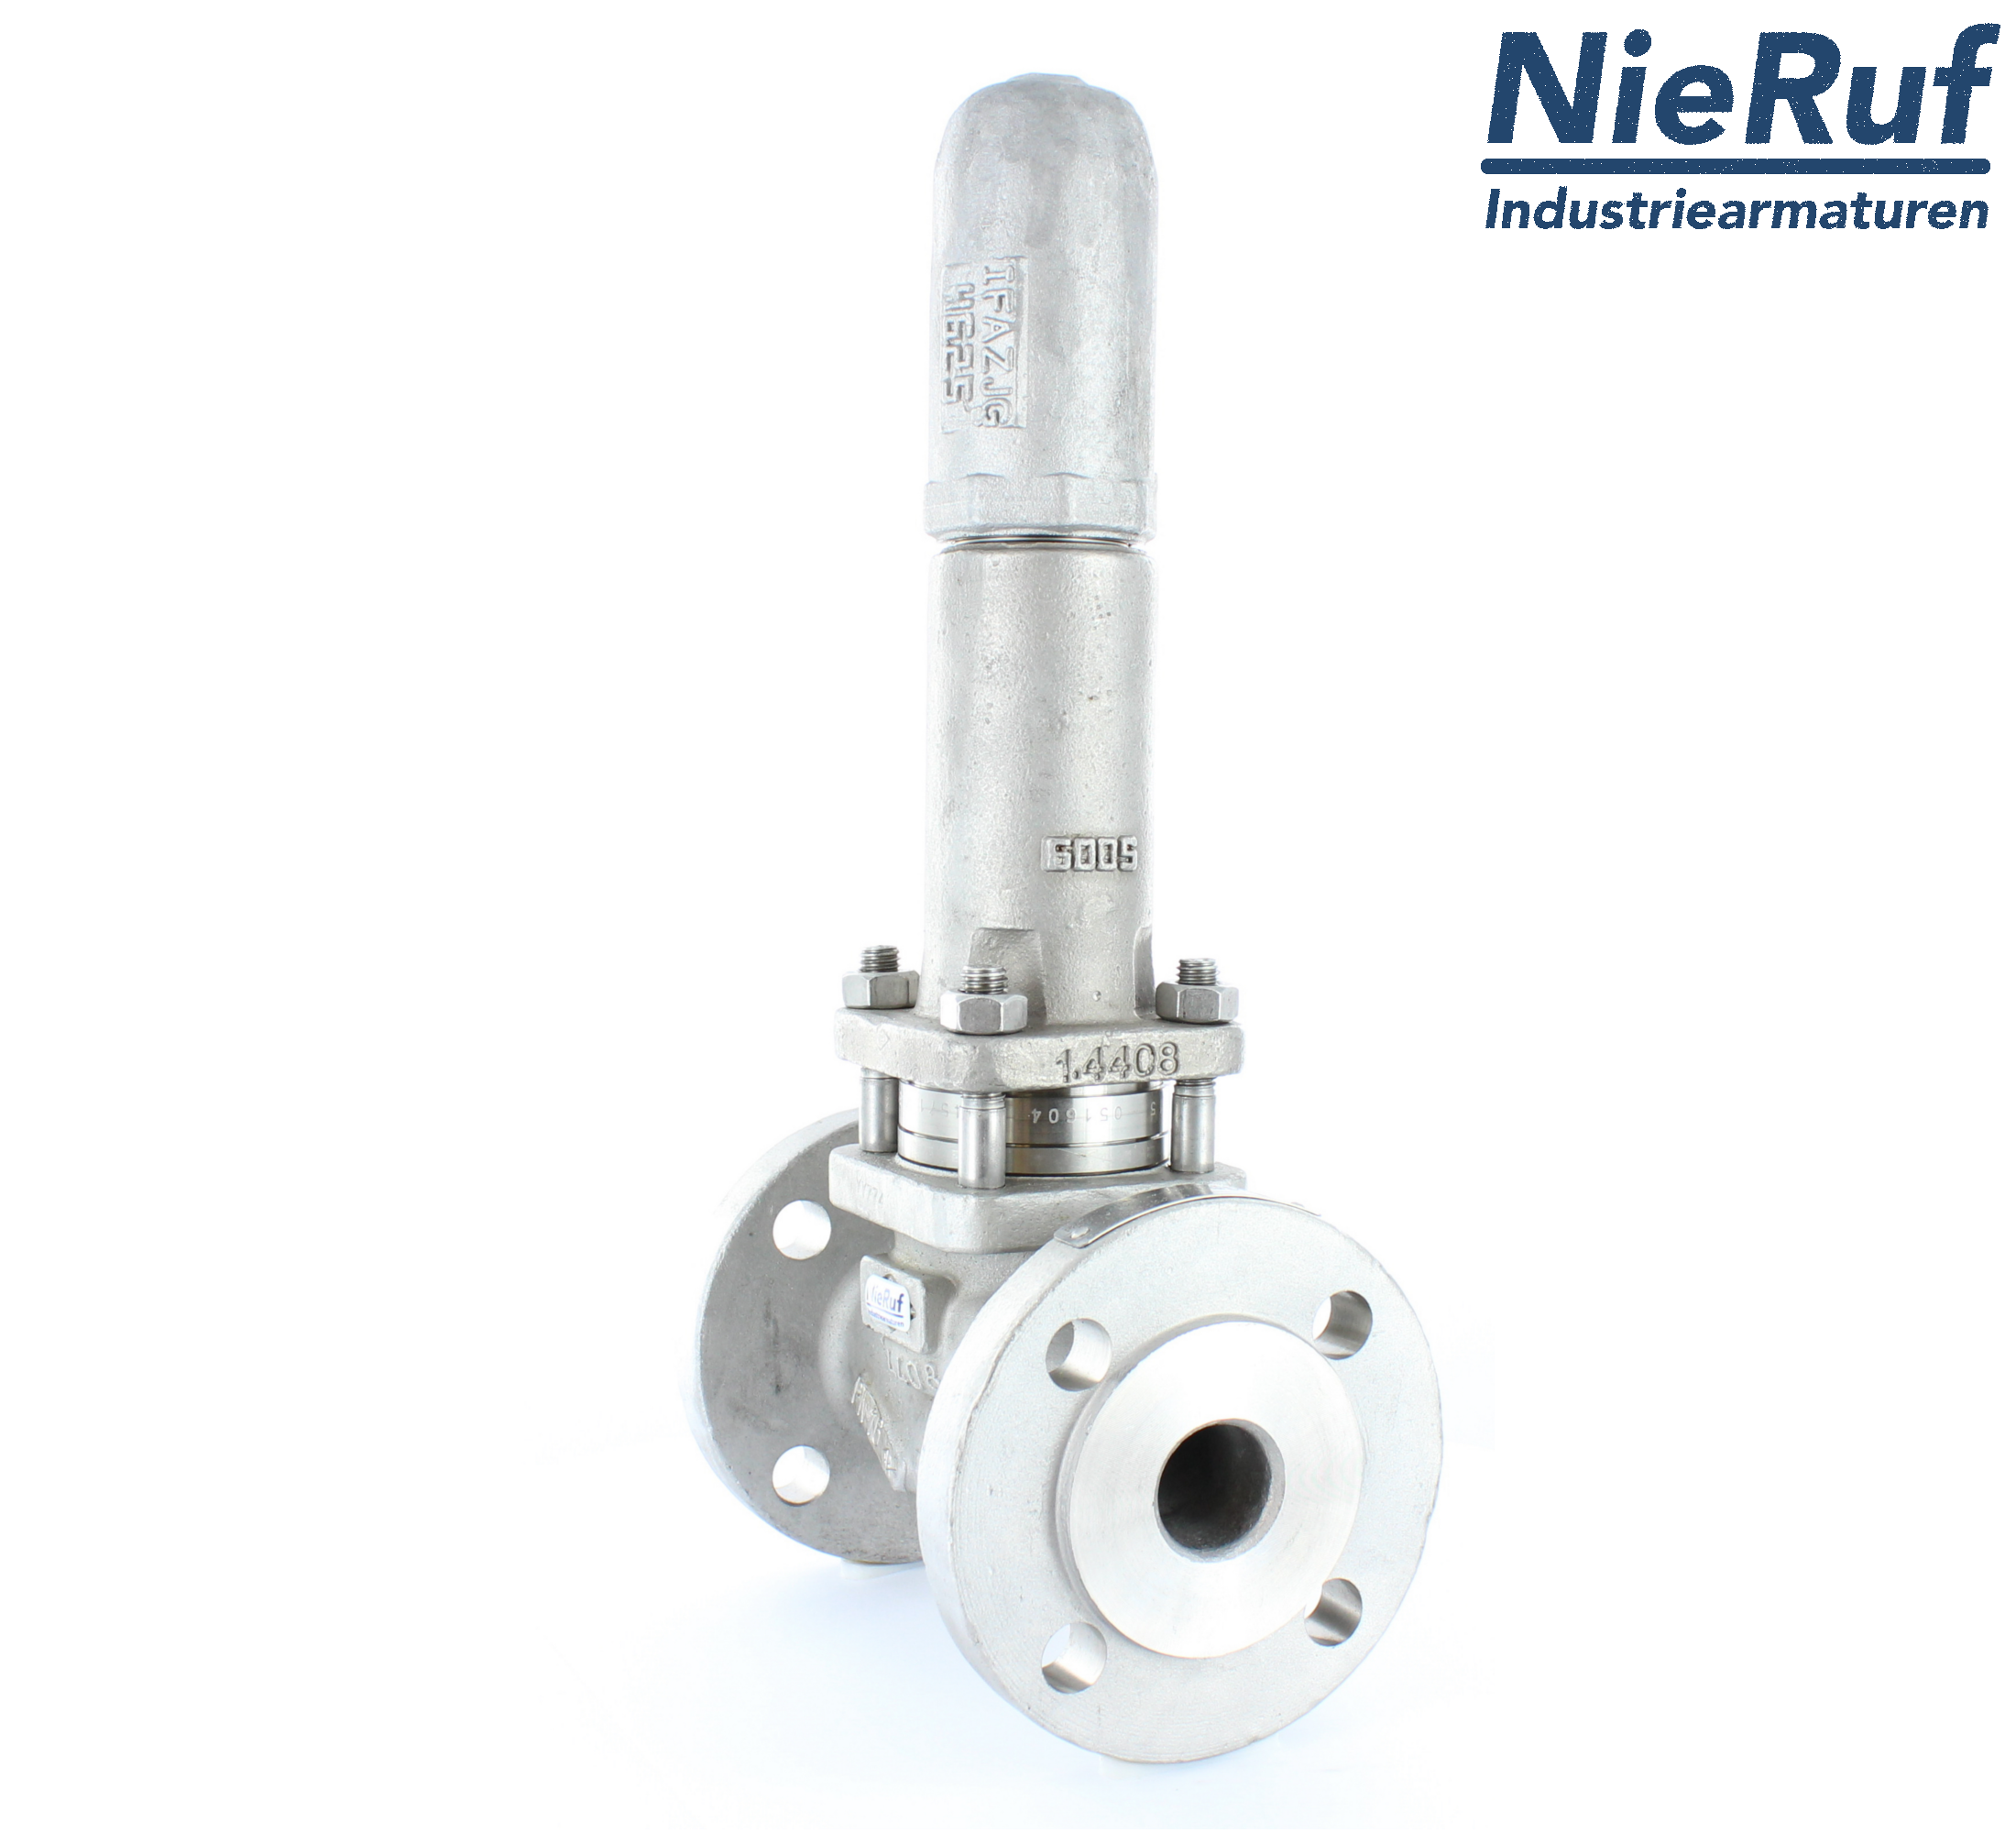 piston overflow valve DN 25 UV13 cast iron 1.0619+N 1,0 - 3,0 bar